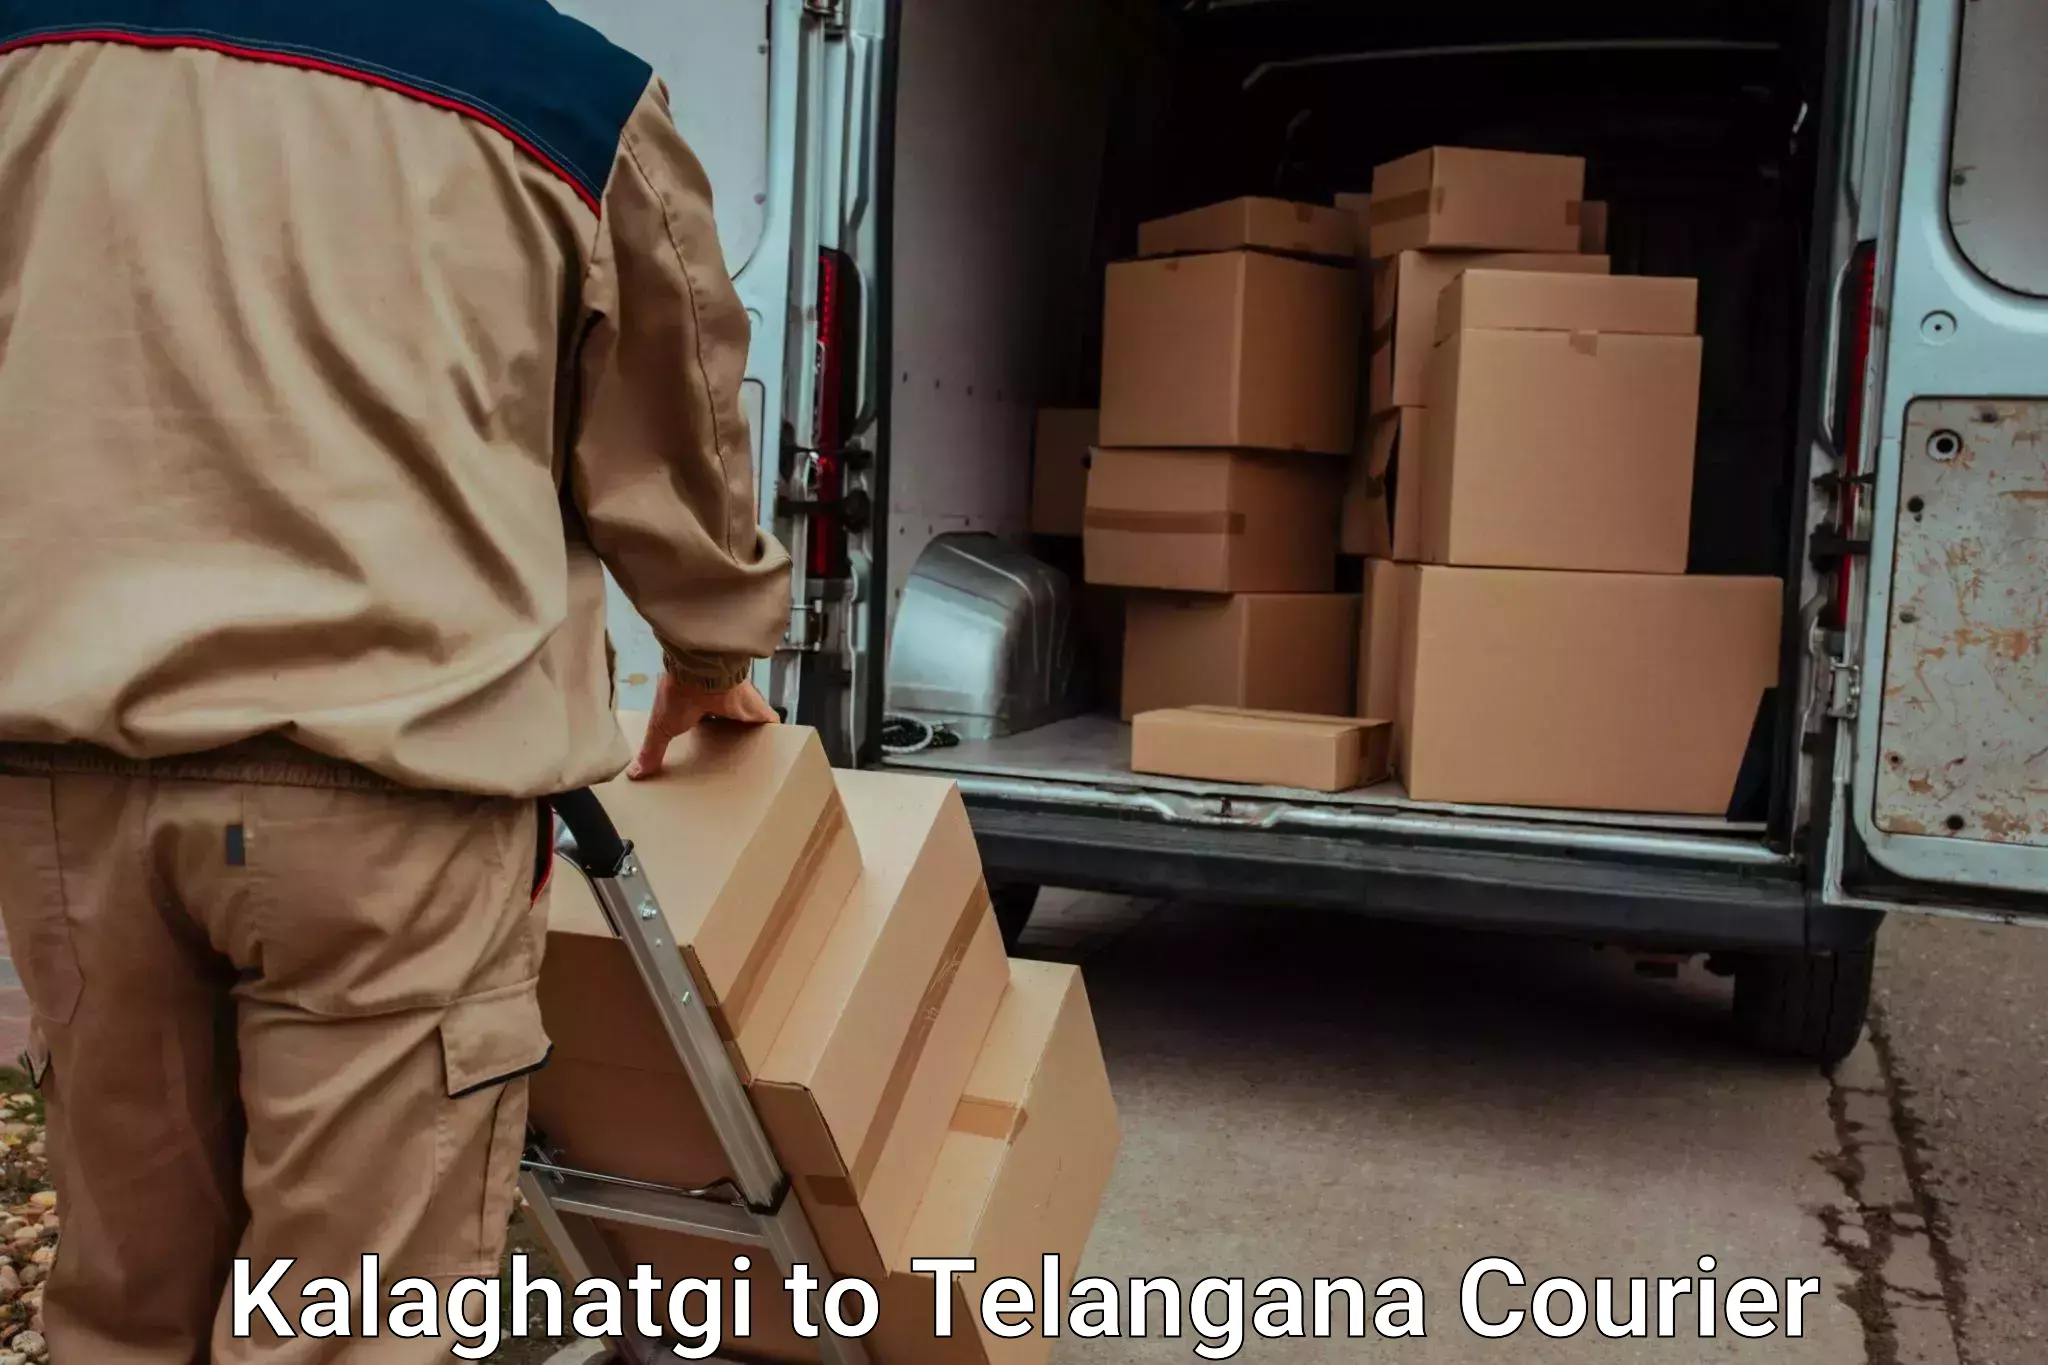 Baggage transport services Kalaghatgi to Warangal